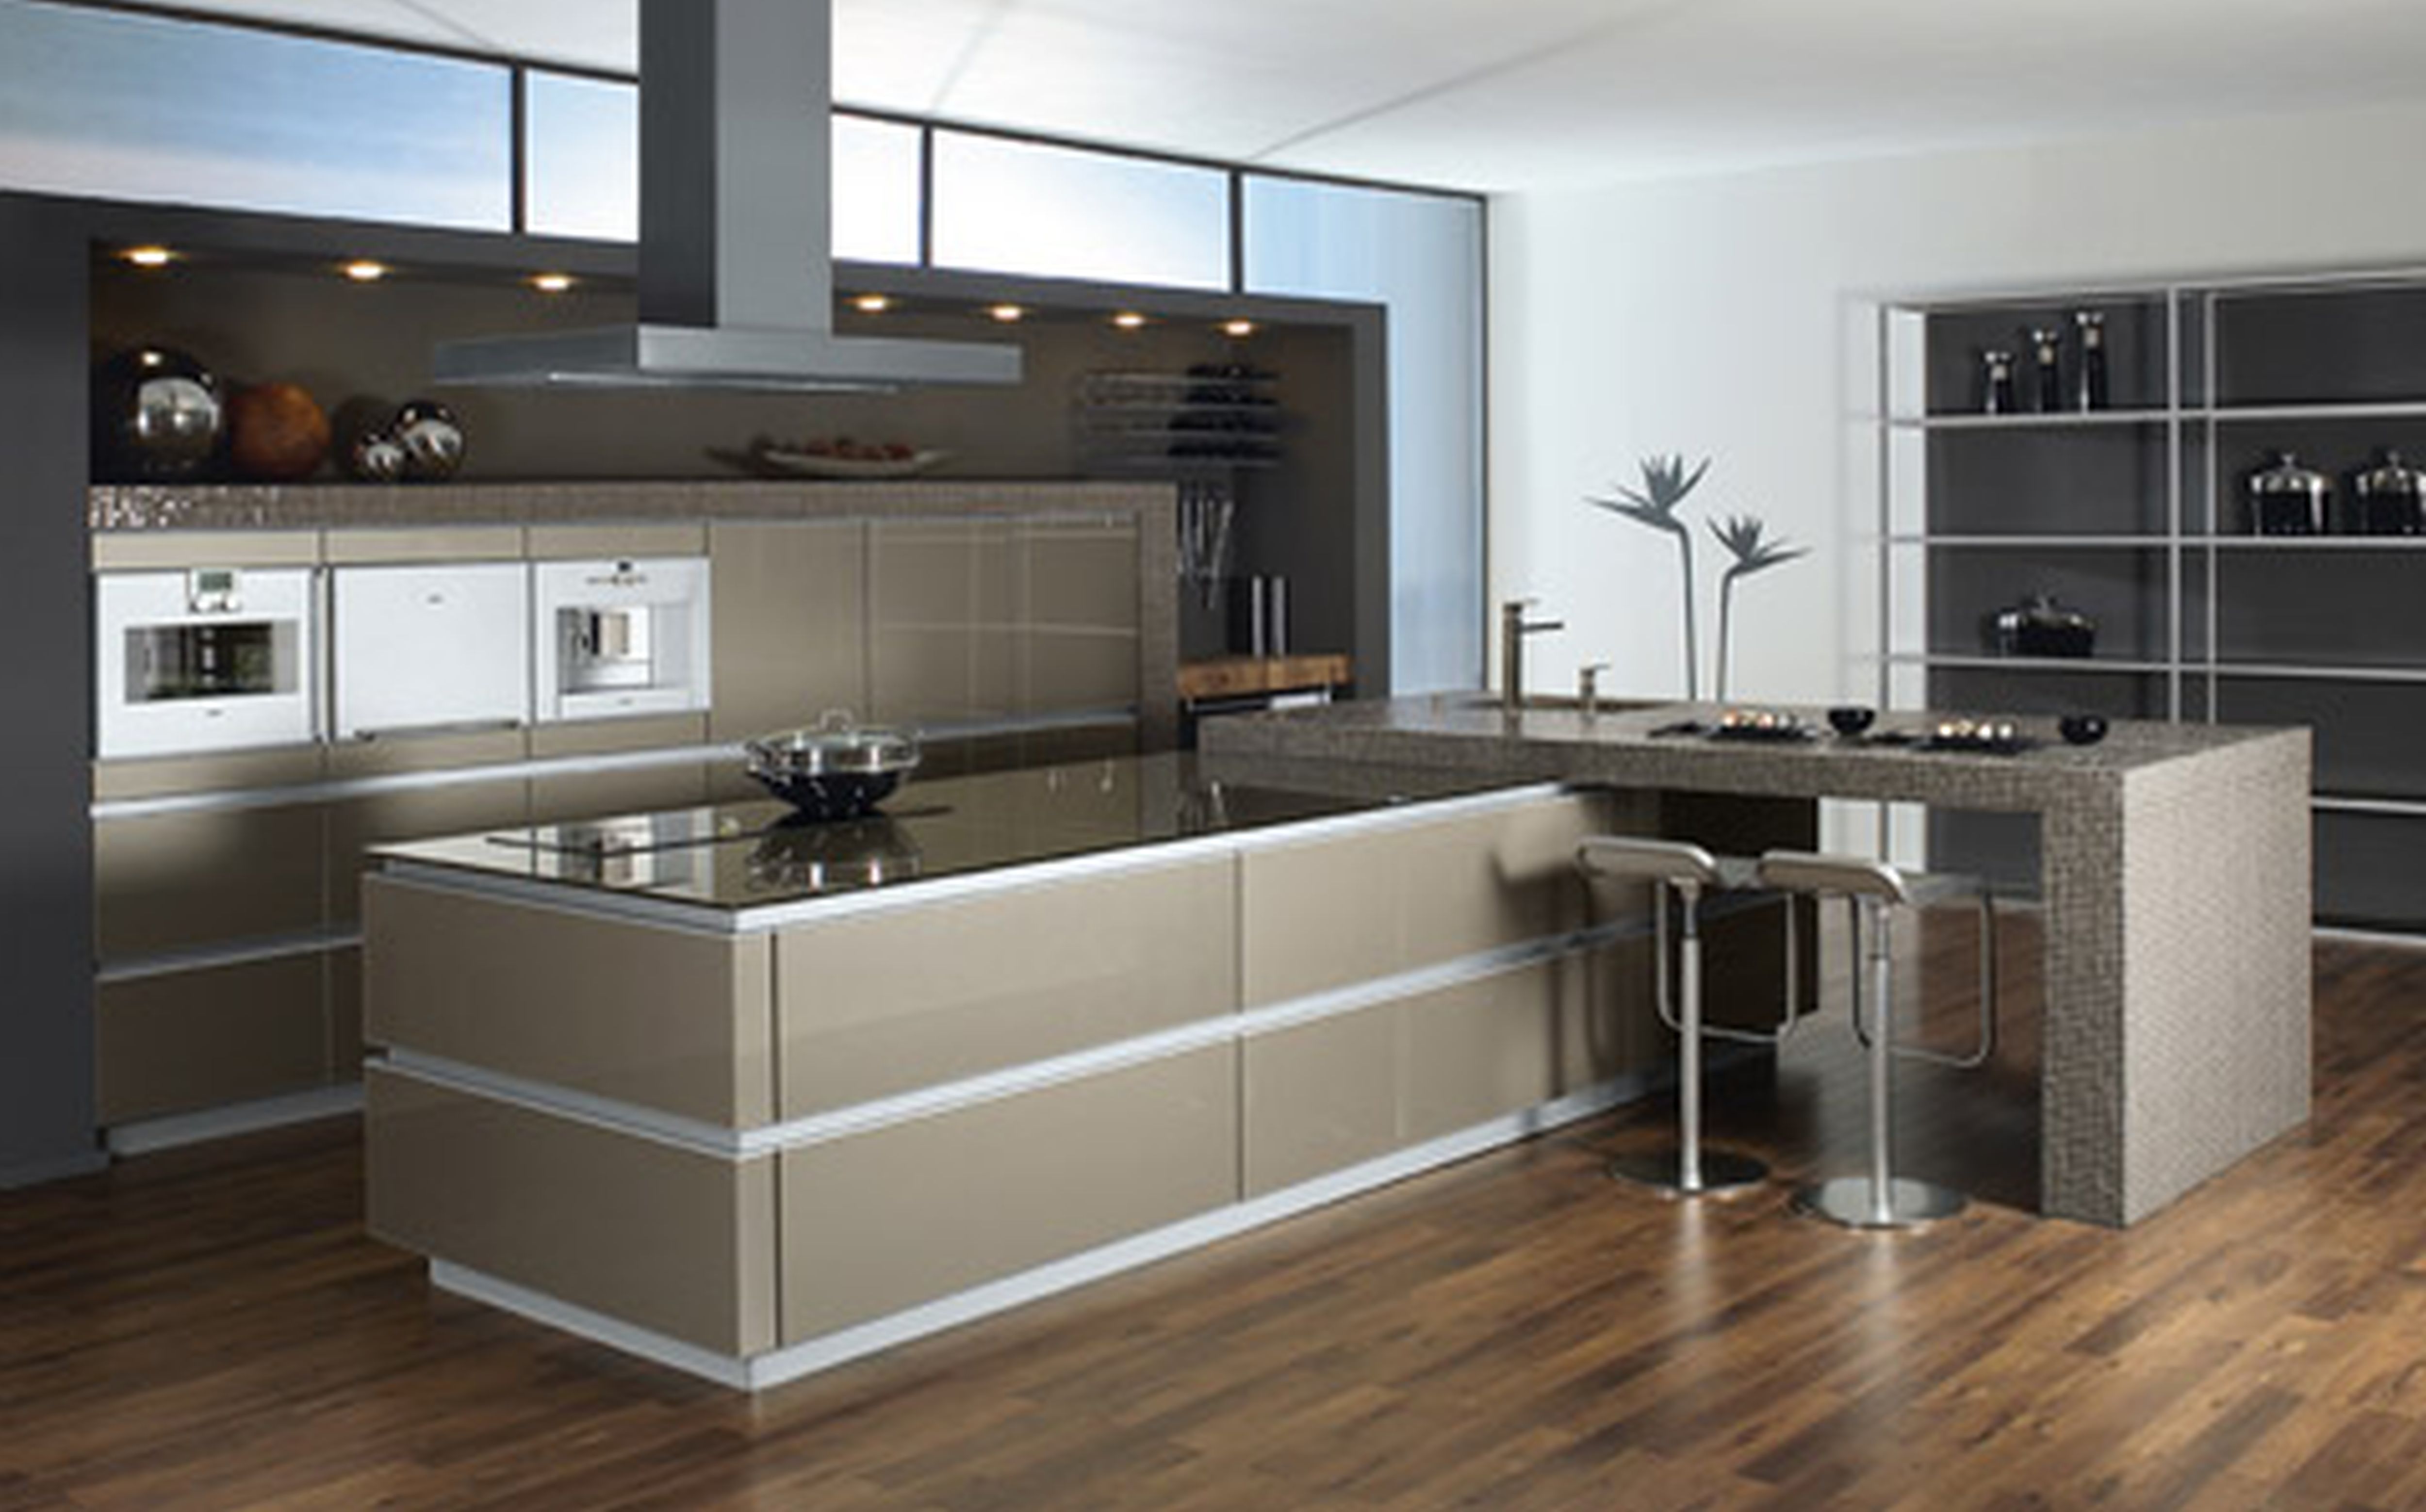  modern kitchen furniture design